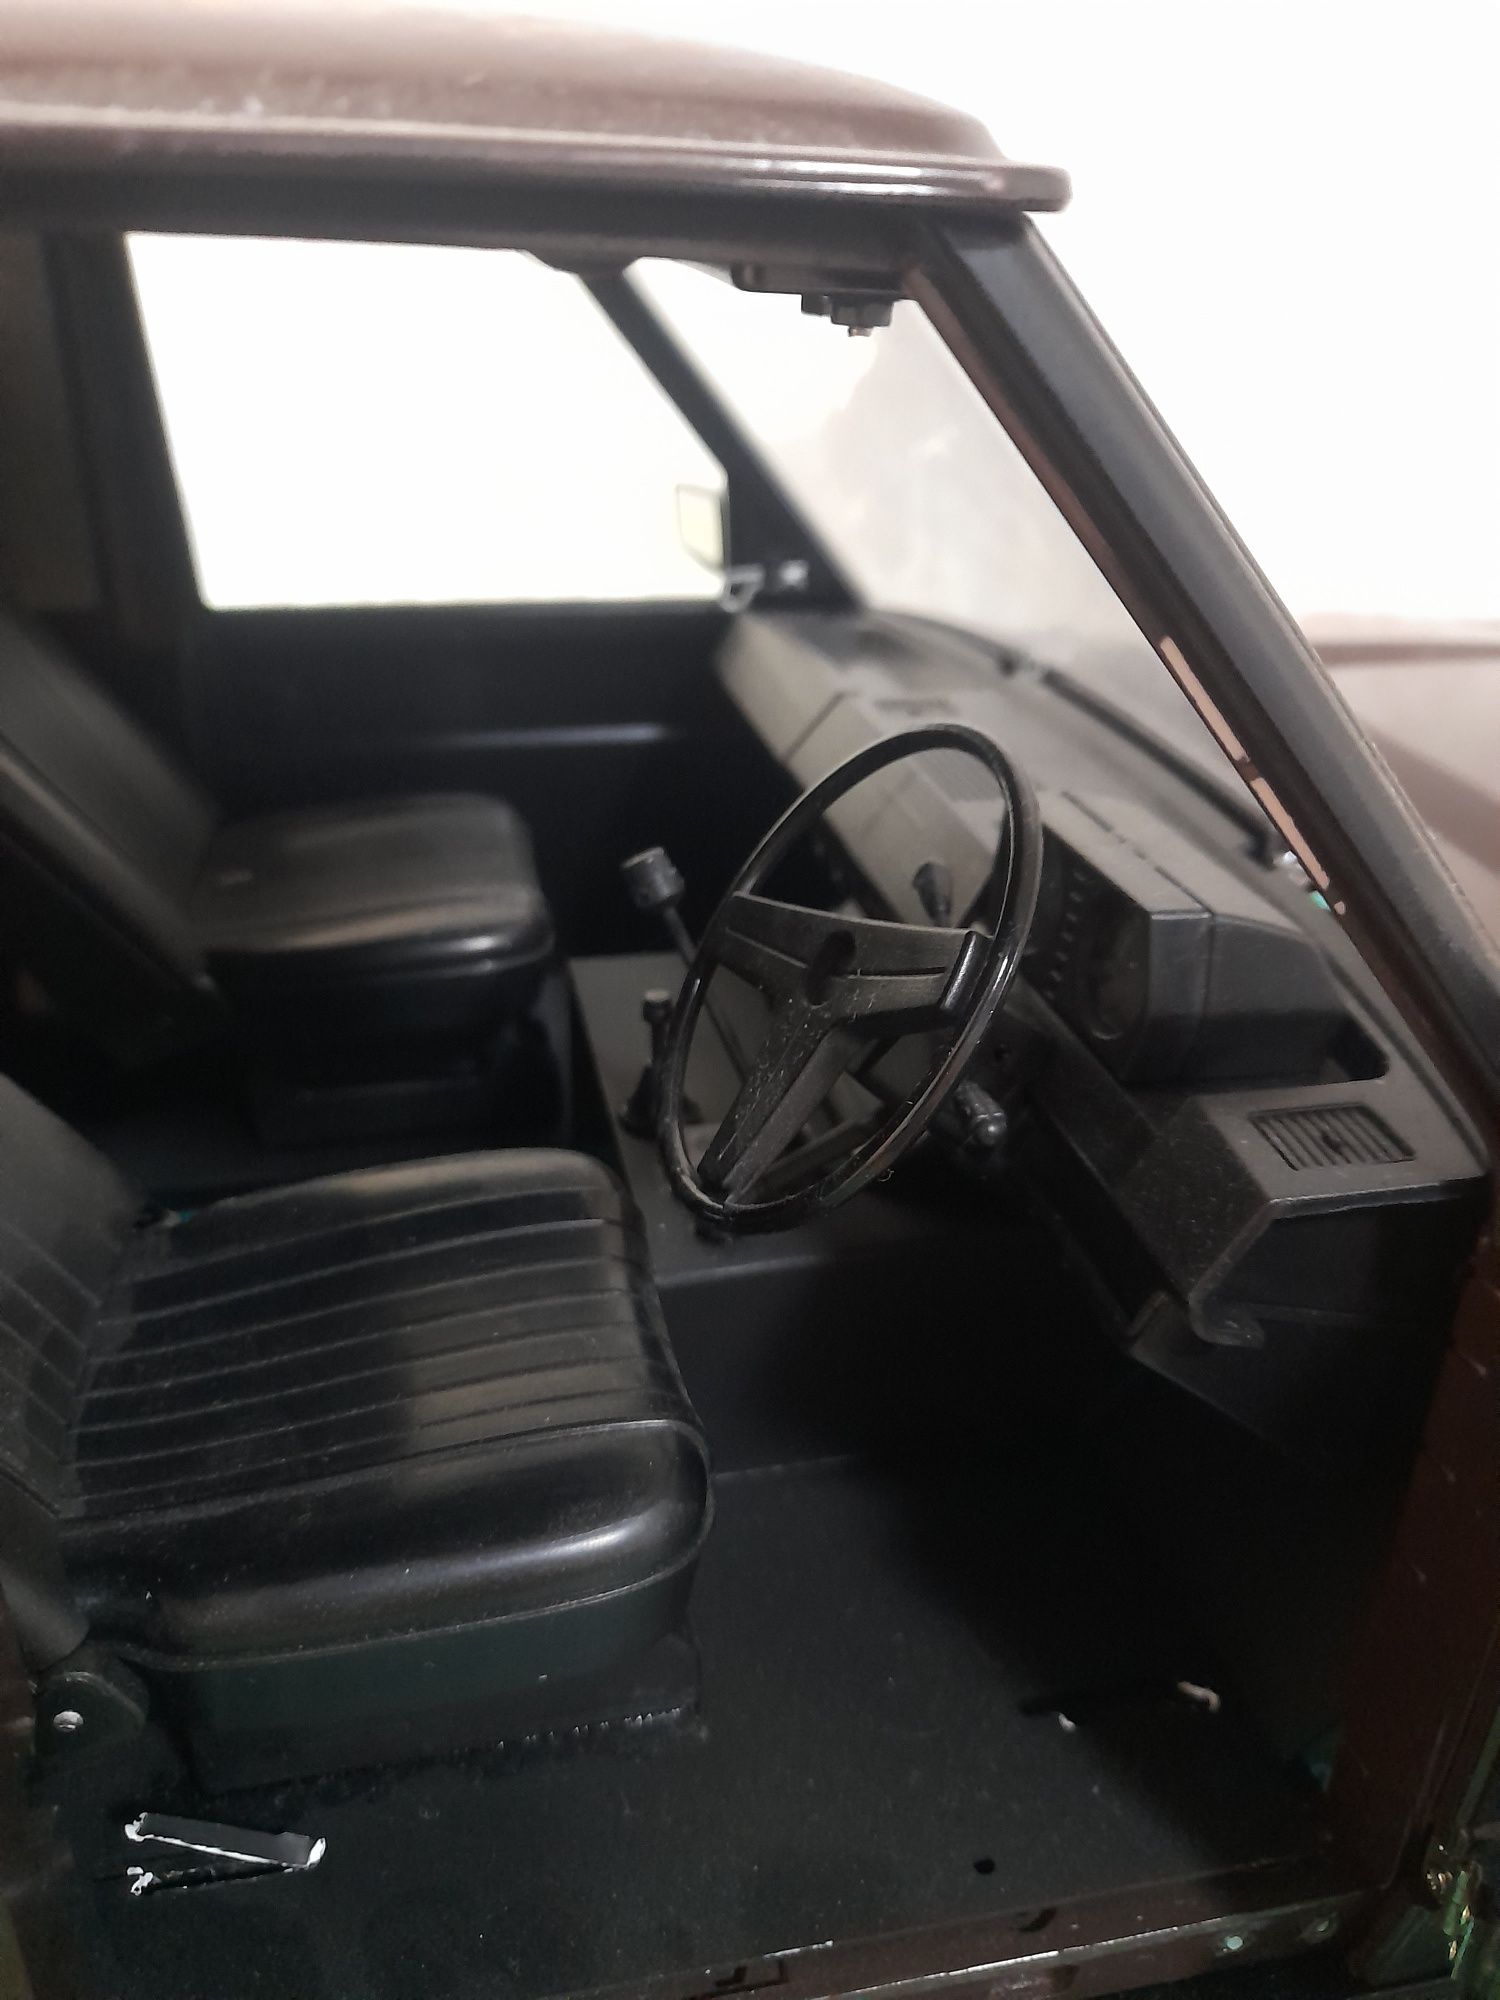 Продам корпус хардбоди Ренж ровер Classic для радио управляемый модели